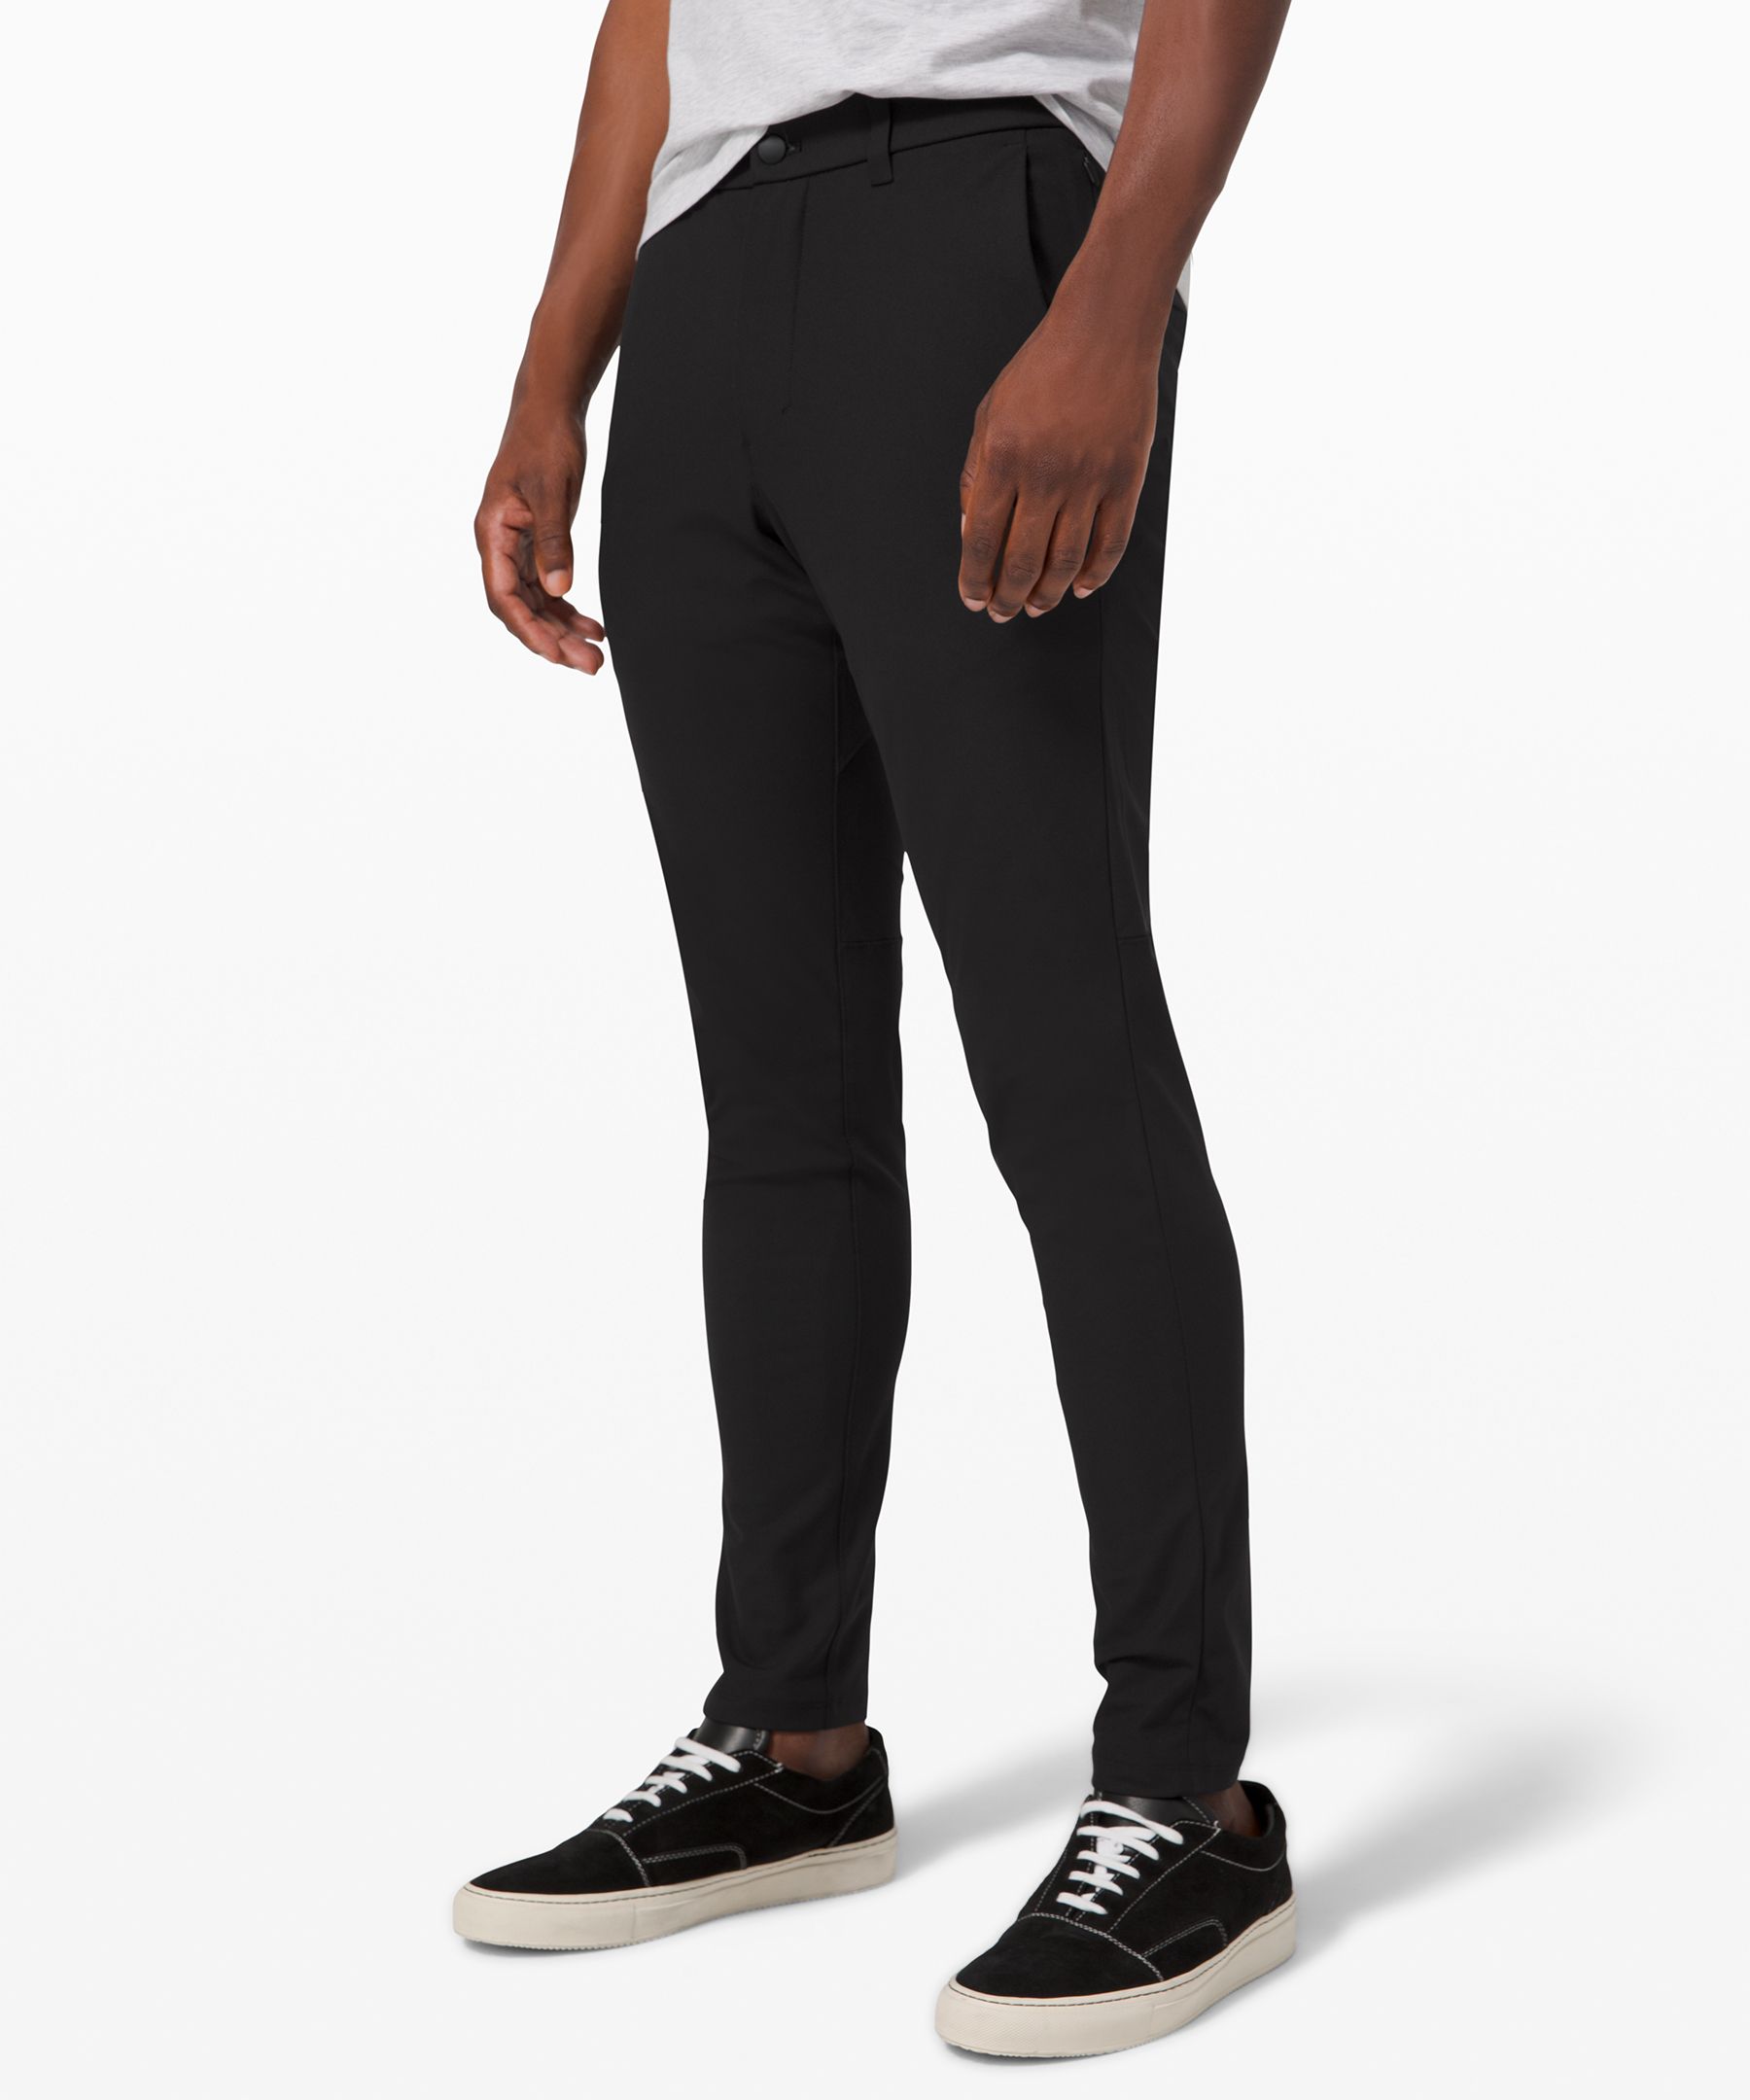 Lululemon Commission Skinny-fit Pants 32" Warpstreme In Black